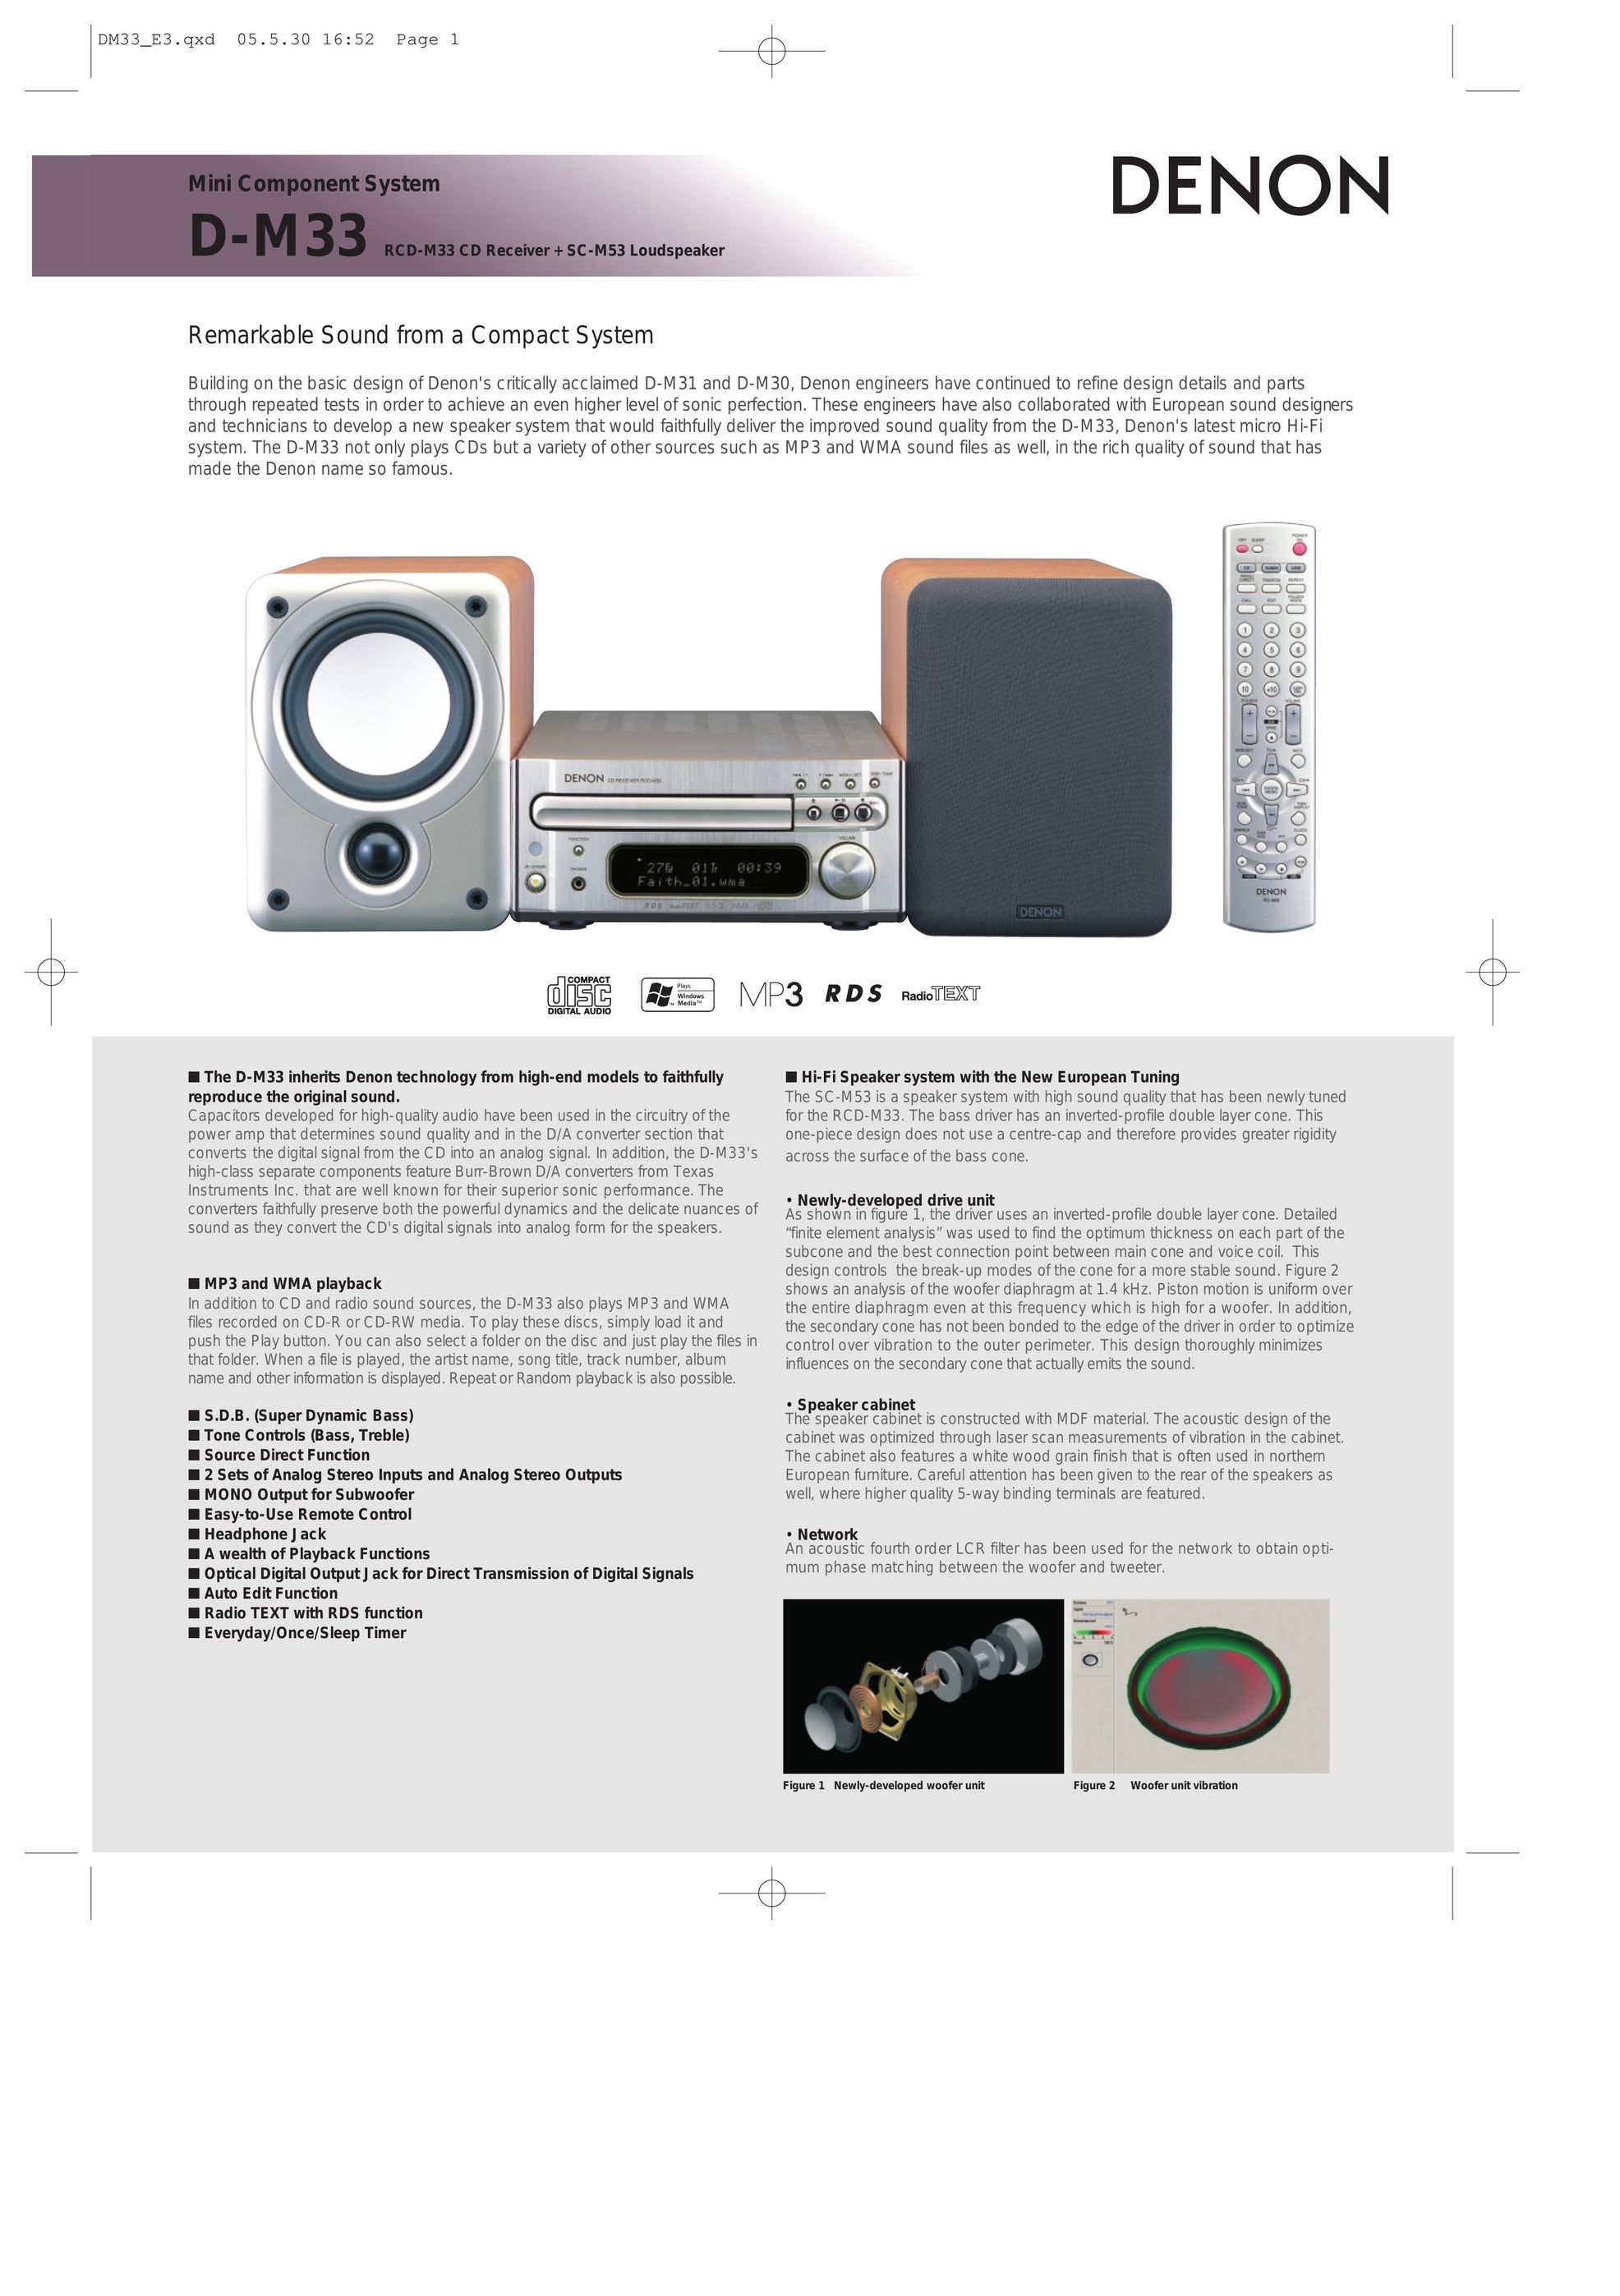 Denon D-M33 Speaker System User Manual